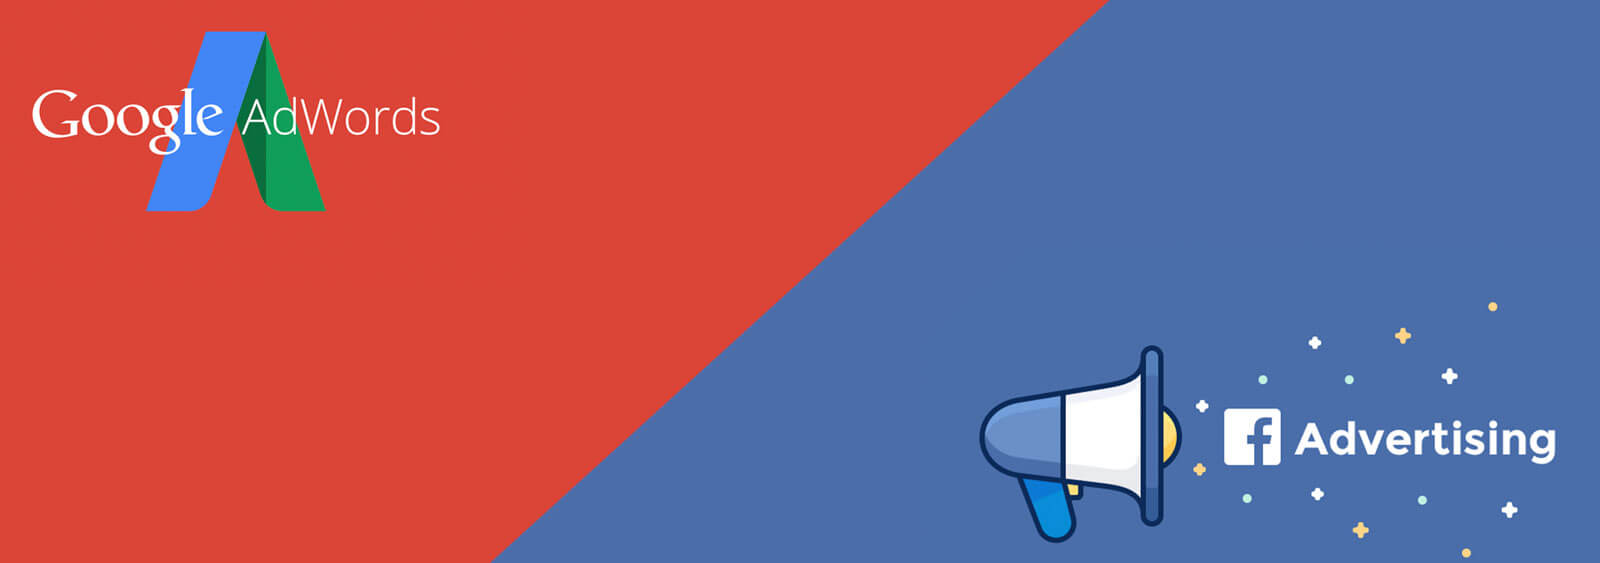 diferencias entre facebook y google adwords